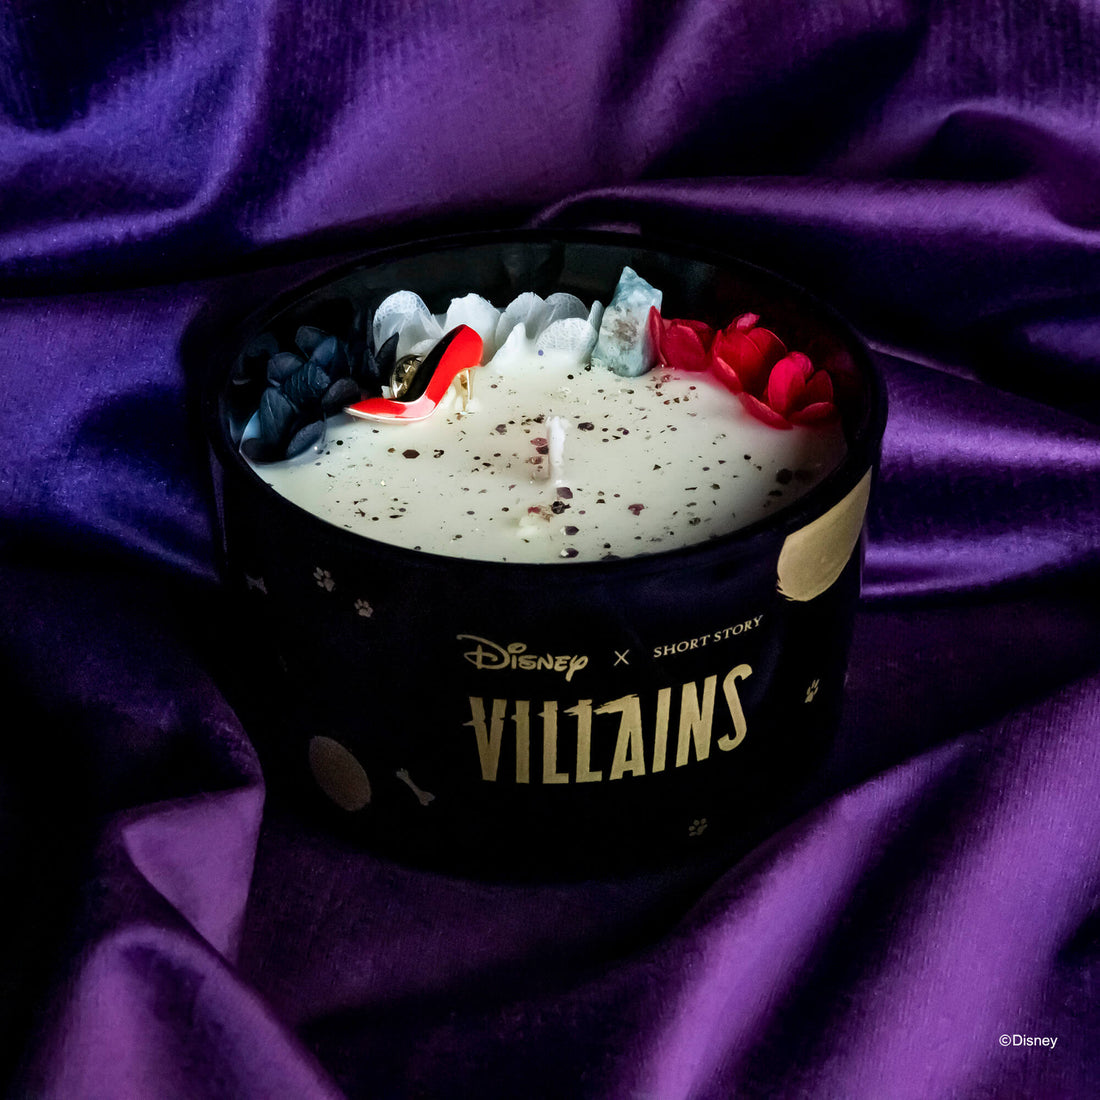 Disney Villains Cruella De Vil Collection Pack